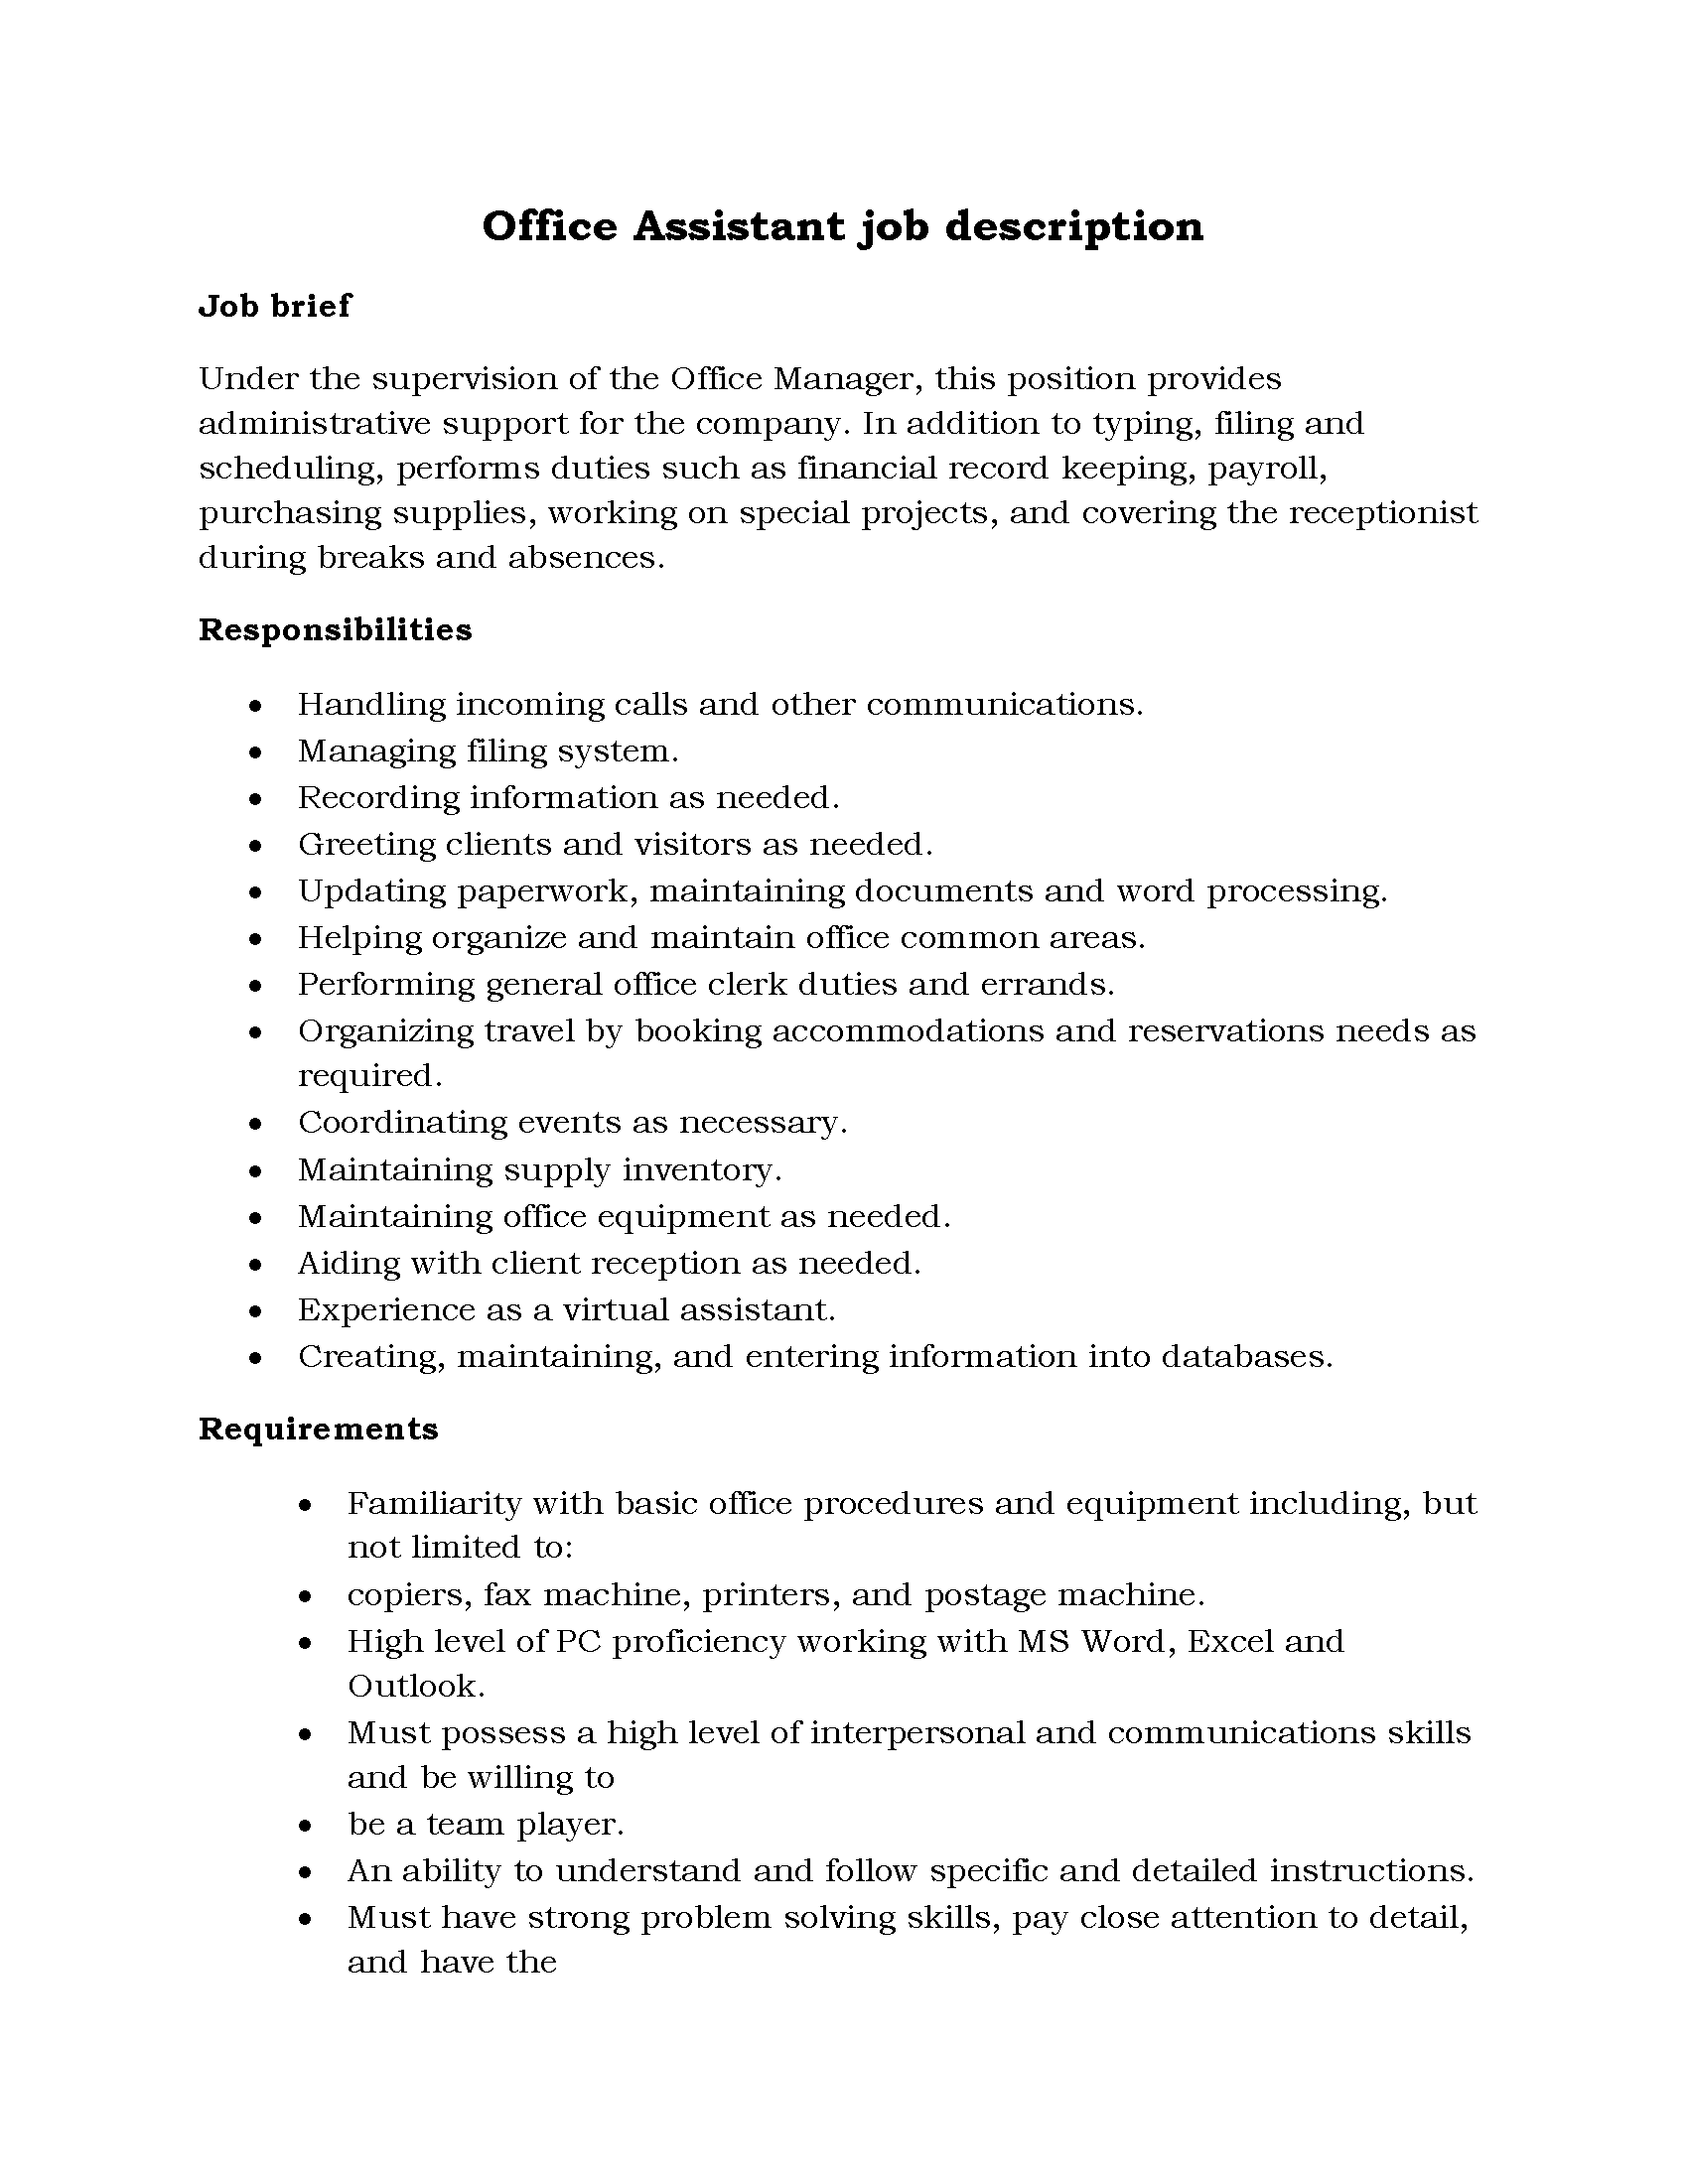 79-Office Assistant job description